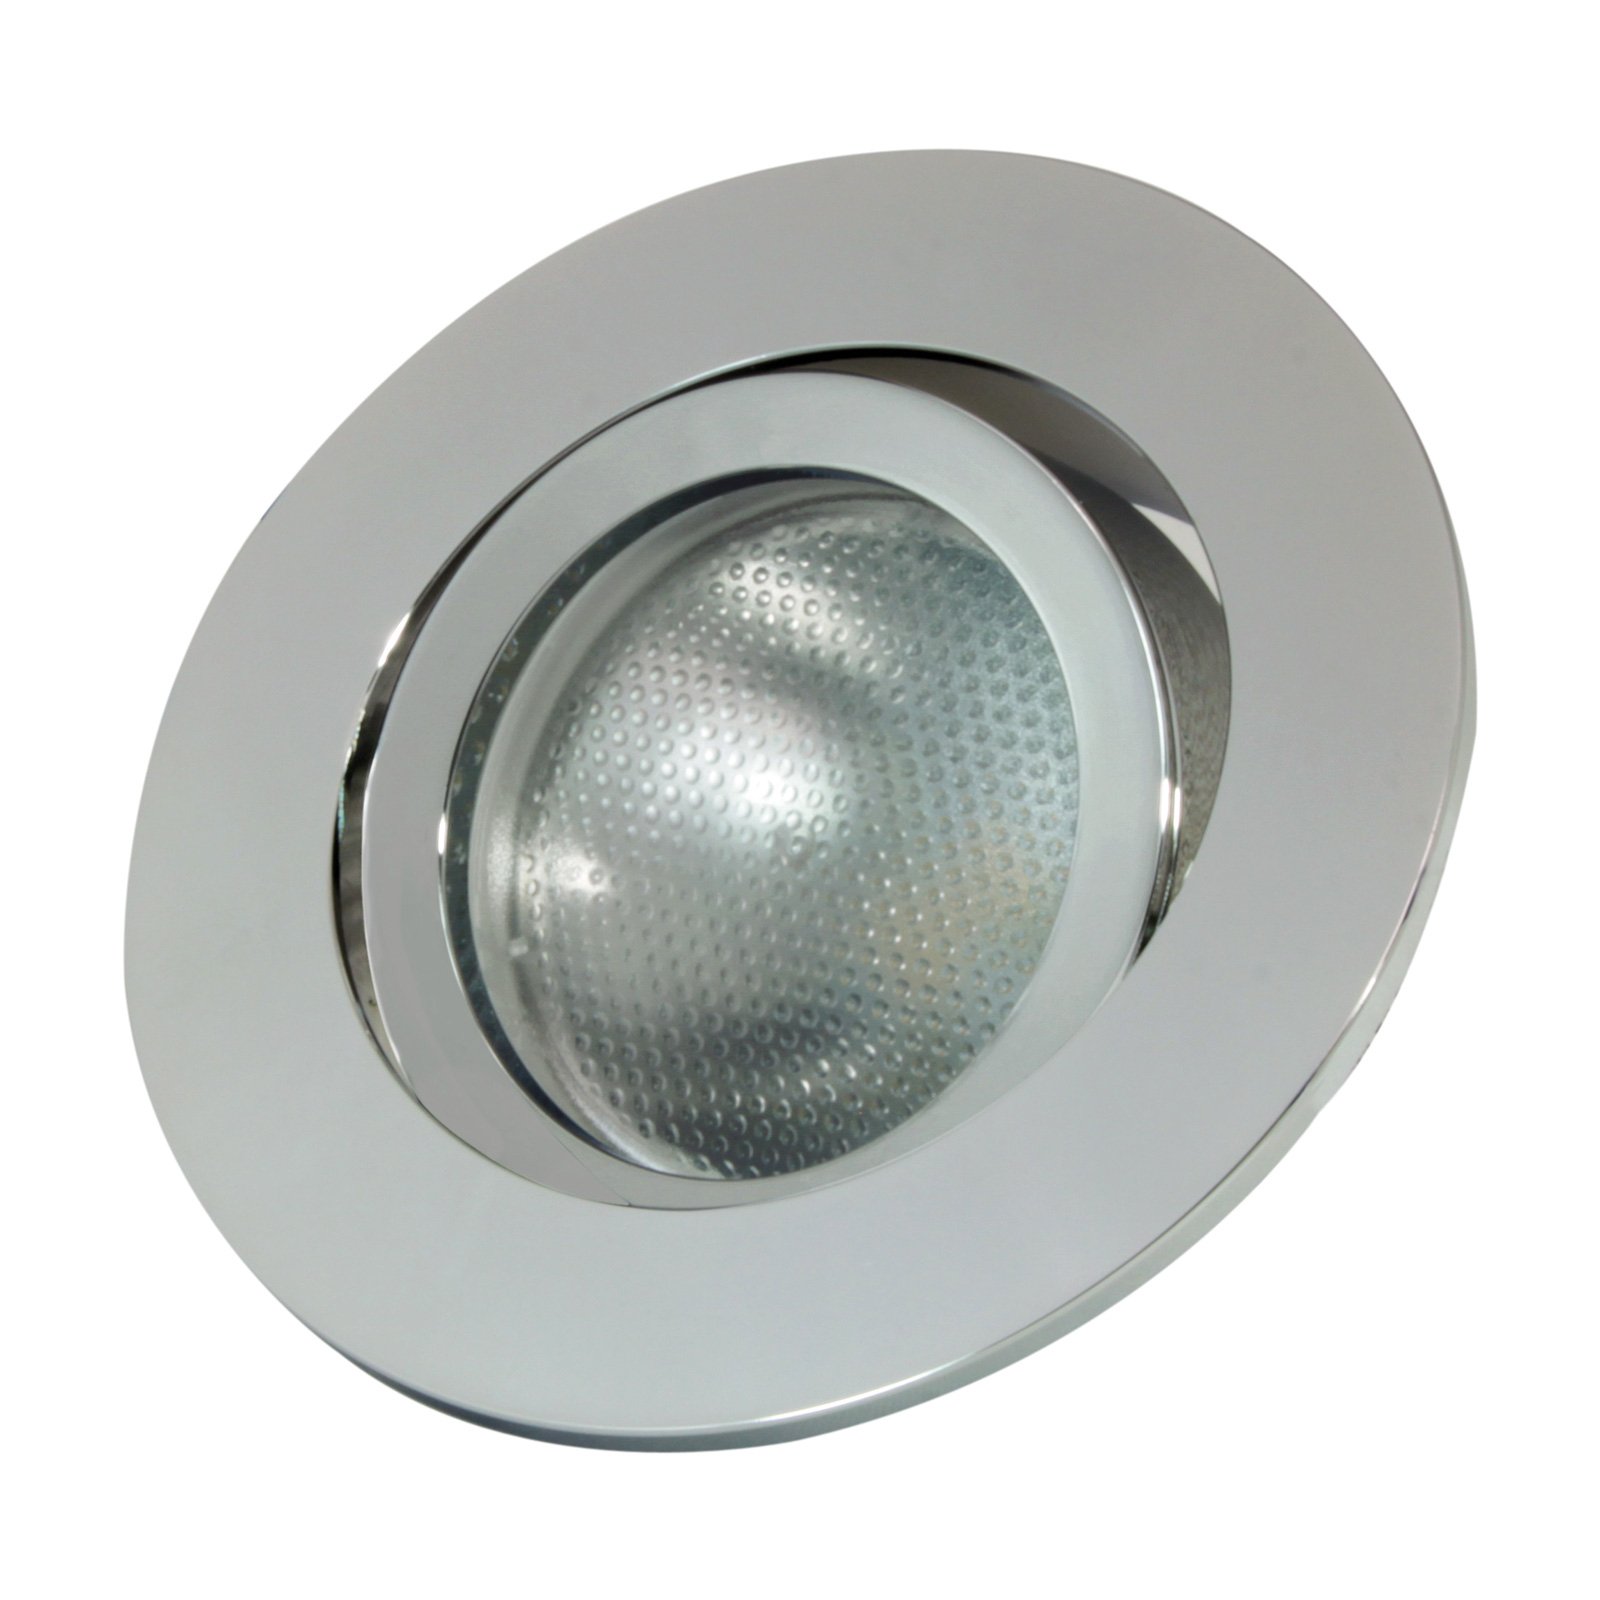 LED sisseehitatud rõngas Decoclic GU10/GU5.3, ümmargune, hõbedane